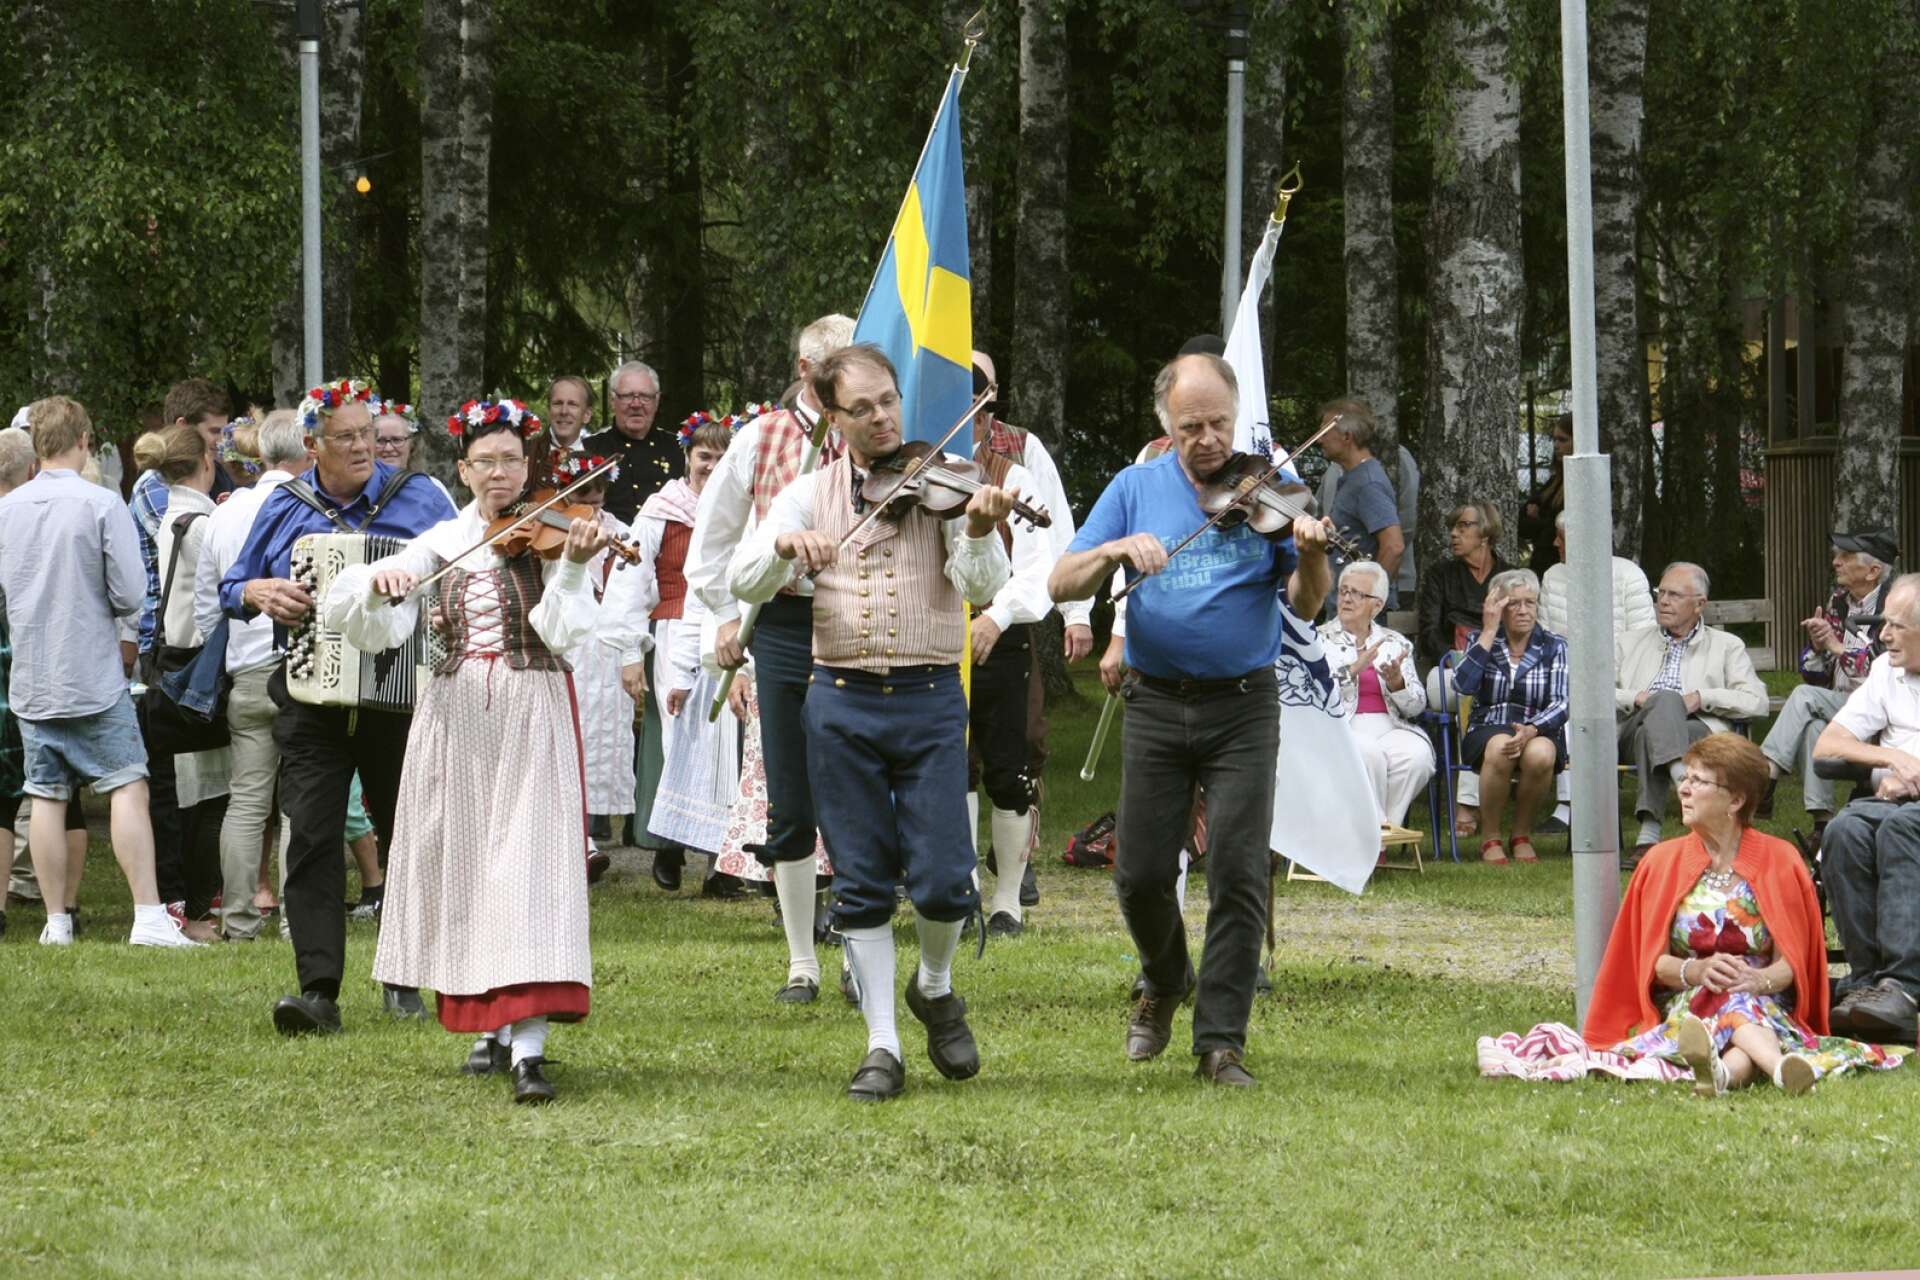 Essunga folkdanslag ackompanjeras bland annat av Margareta på fiol.